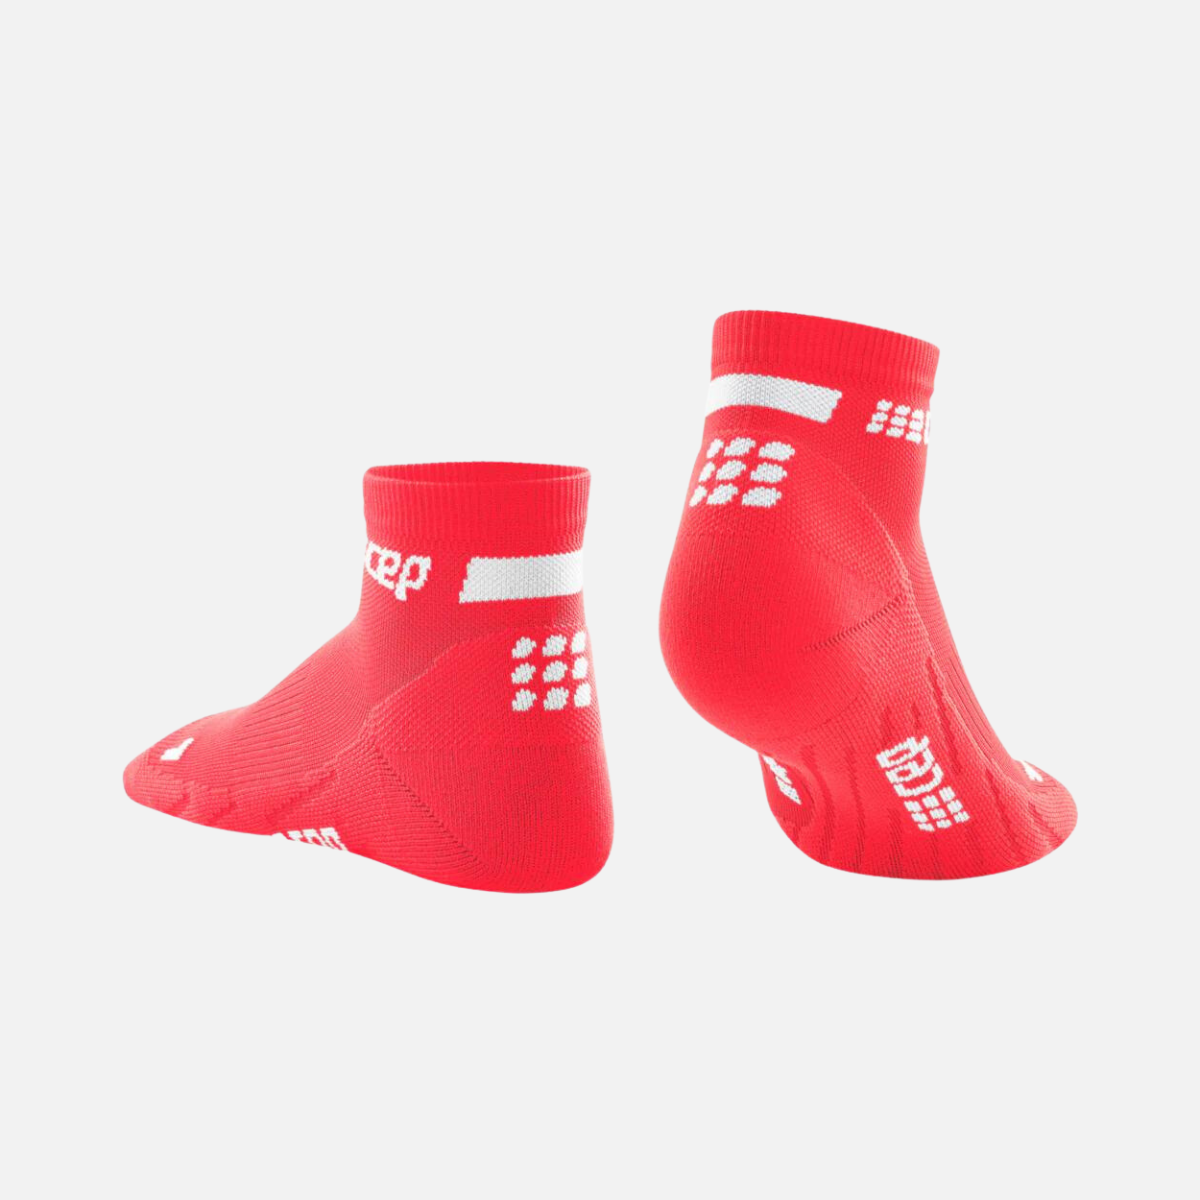 Cep The Run 4.0 Low Cut Women's Socks -Pink